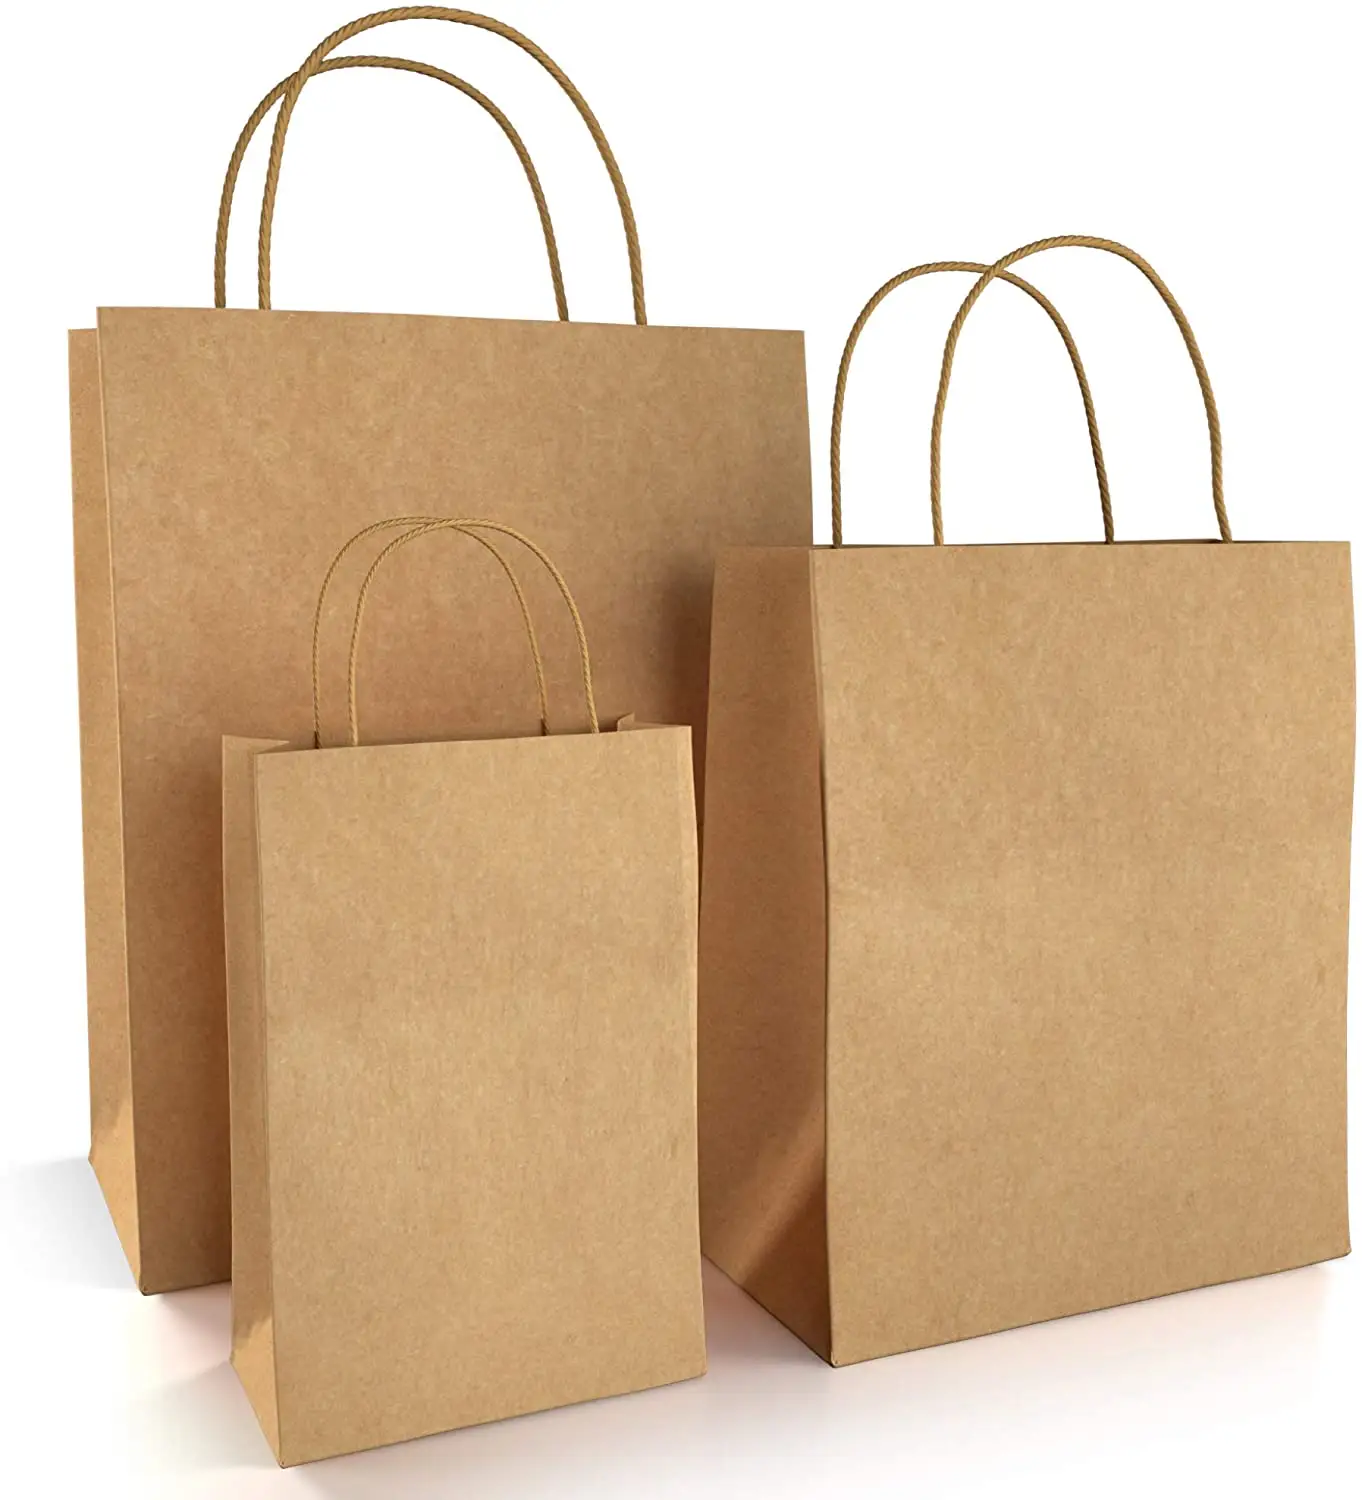 Tas Kertas Coklat dengan Pegangan Penawaran Ukuran Campur untuk Hadiah, Belanja, Butik, Kemasan, Barang Dagangan, Bahan Makanan dan Kerajinan